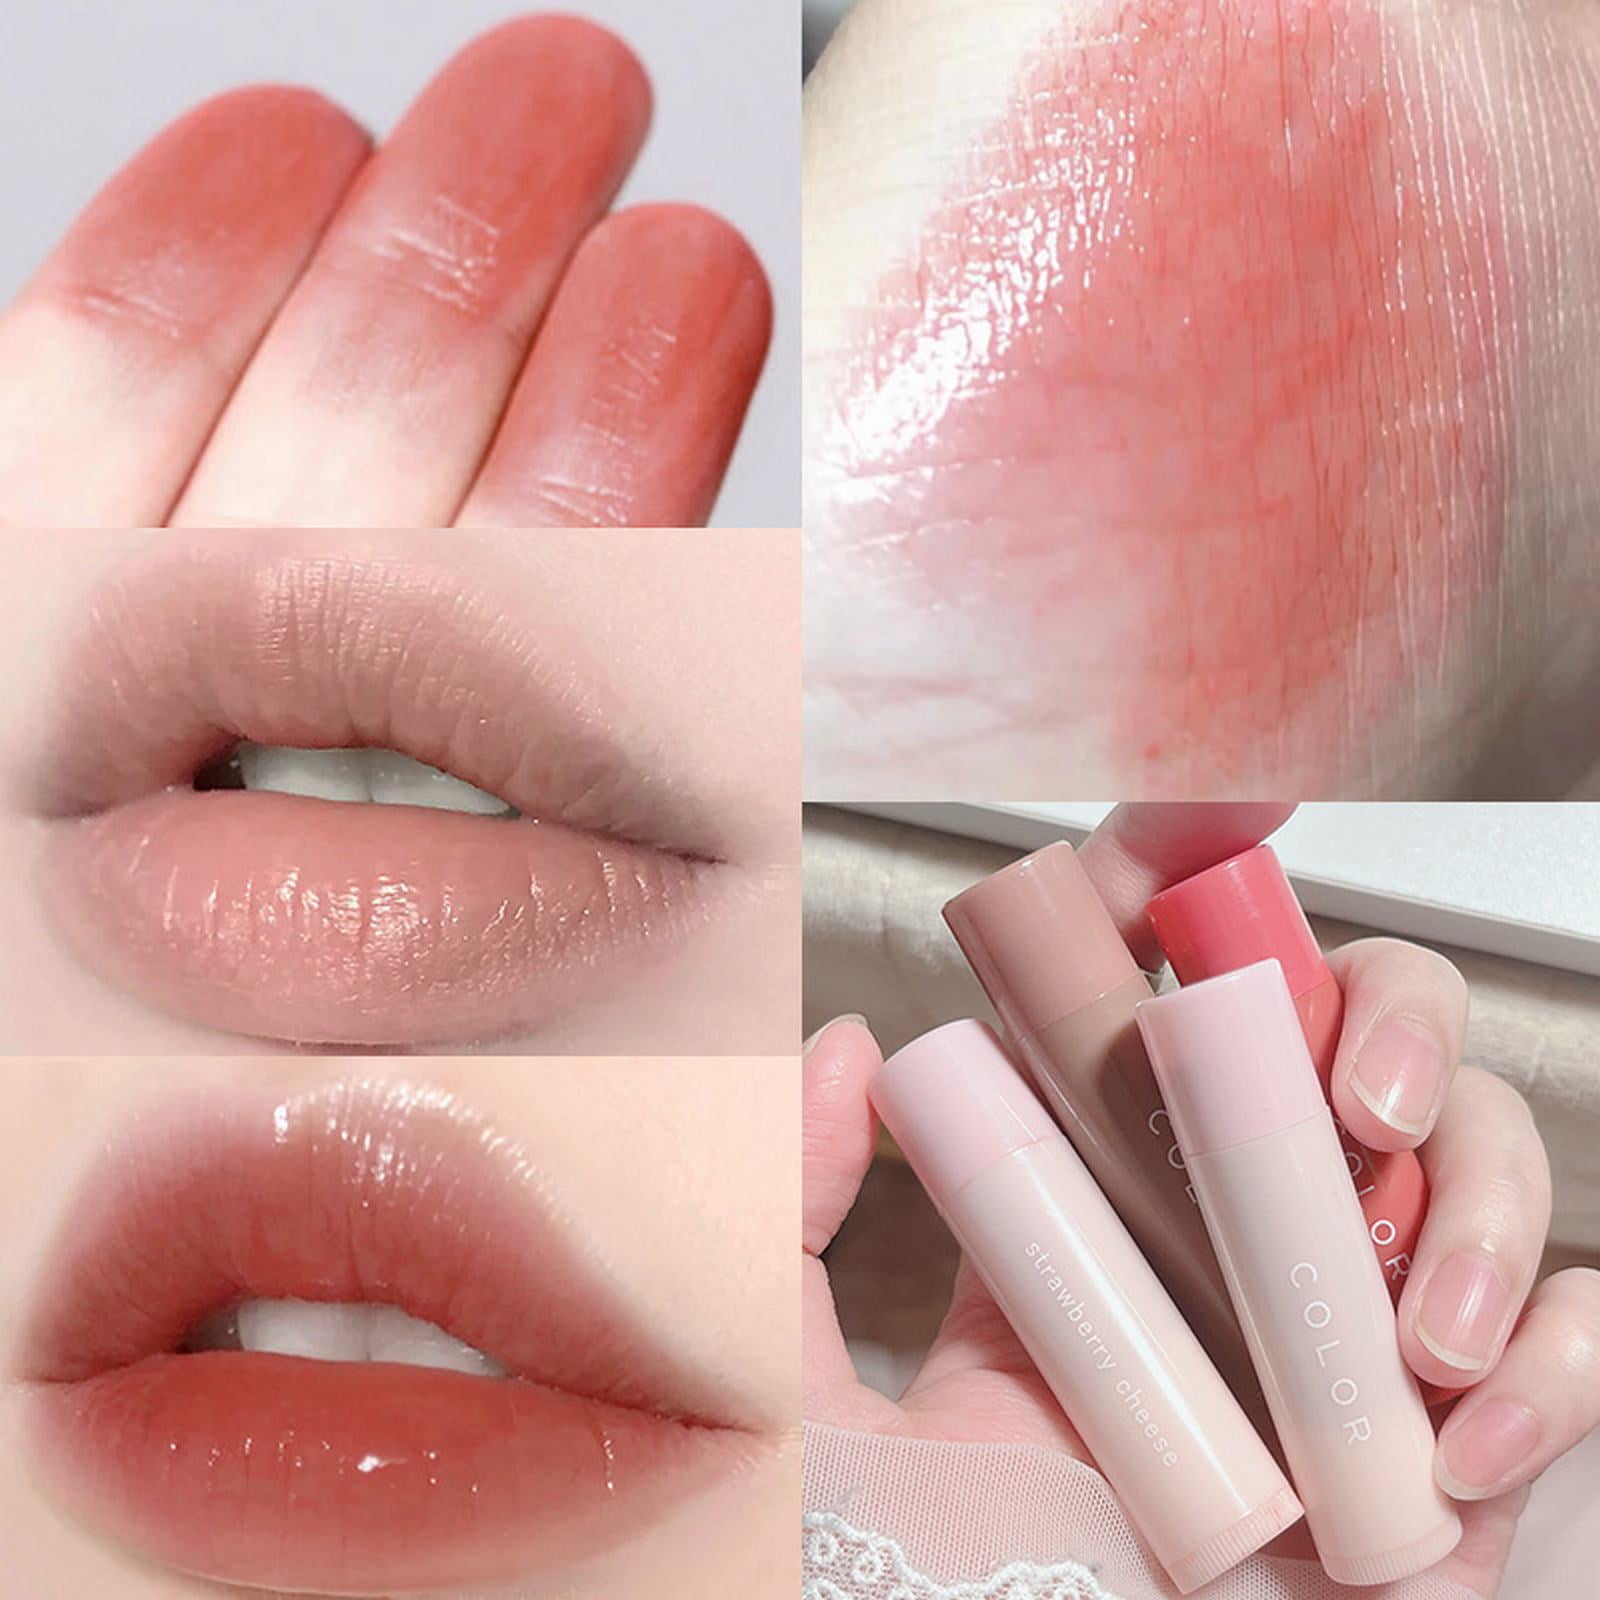 HD wallpaper: anime girl, lipstick, earring, ribbon, blush, studio shot,  white background | Wallpaper Flare